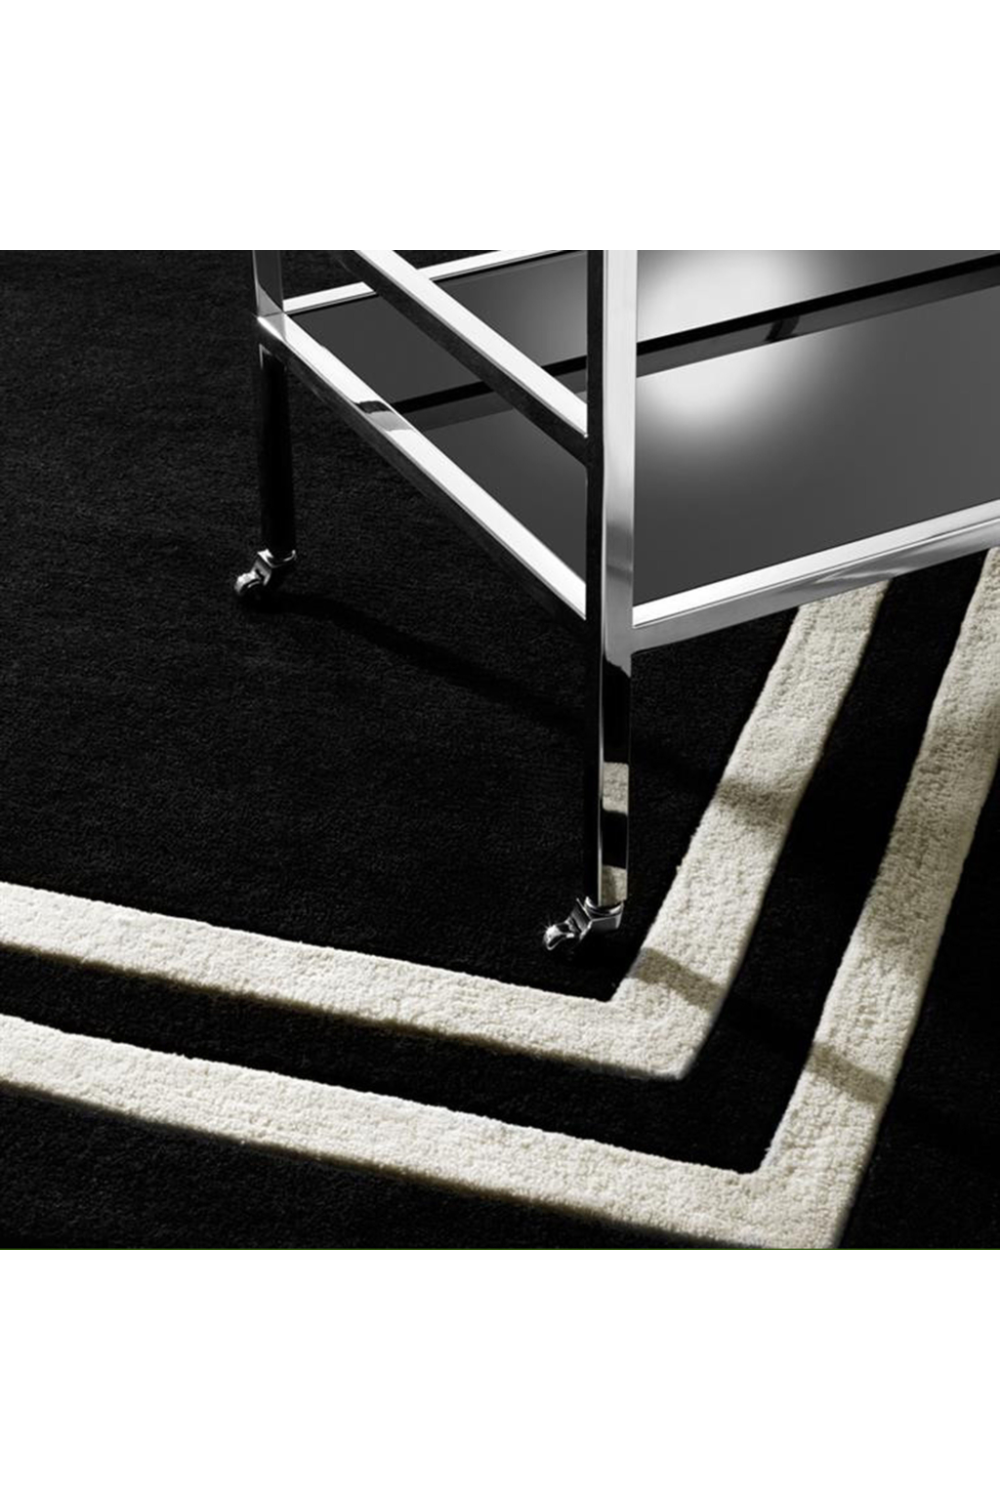 Black Carpet 7' x 10' | Eichholtz Celeste | Oroa.com